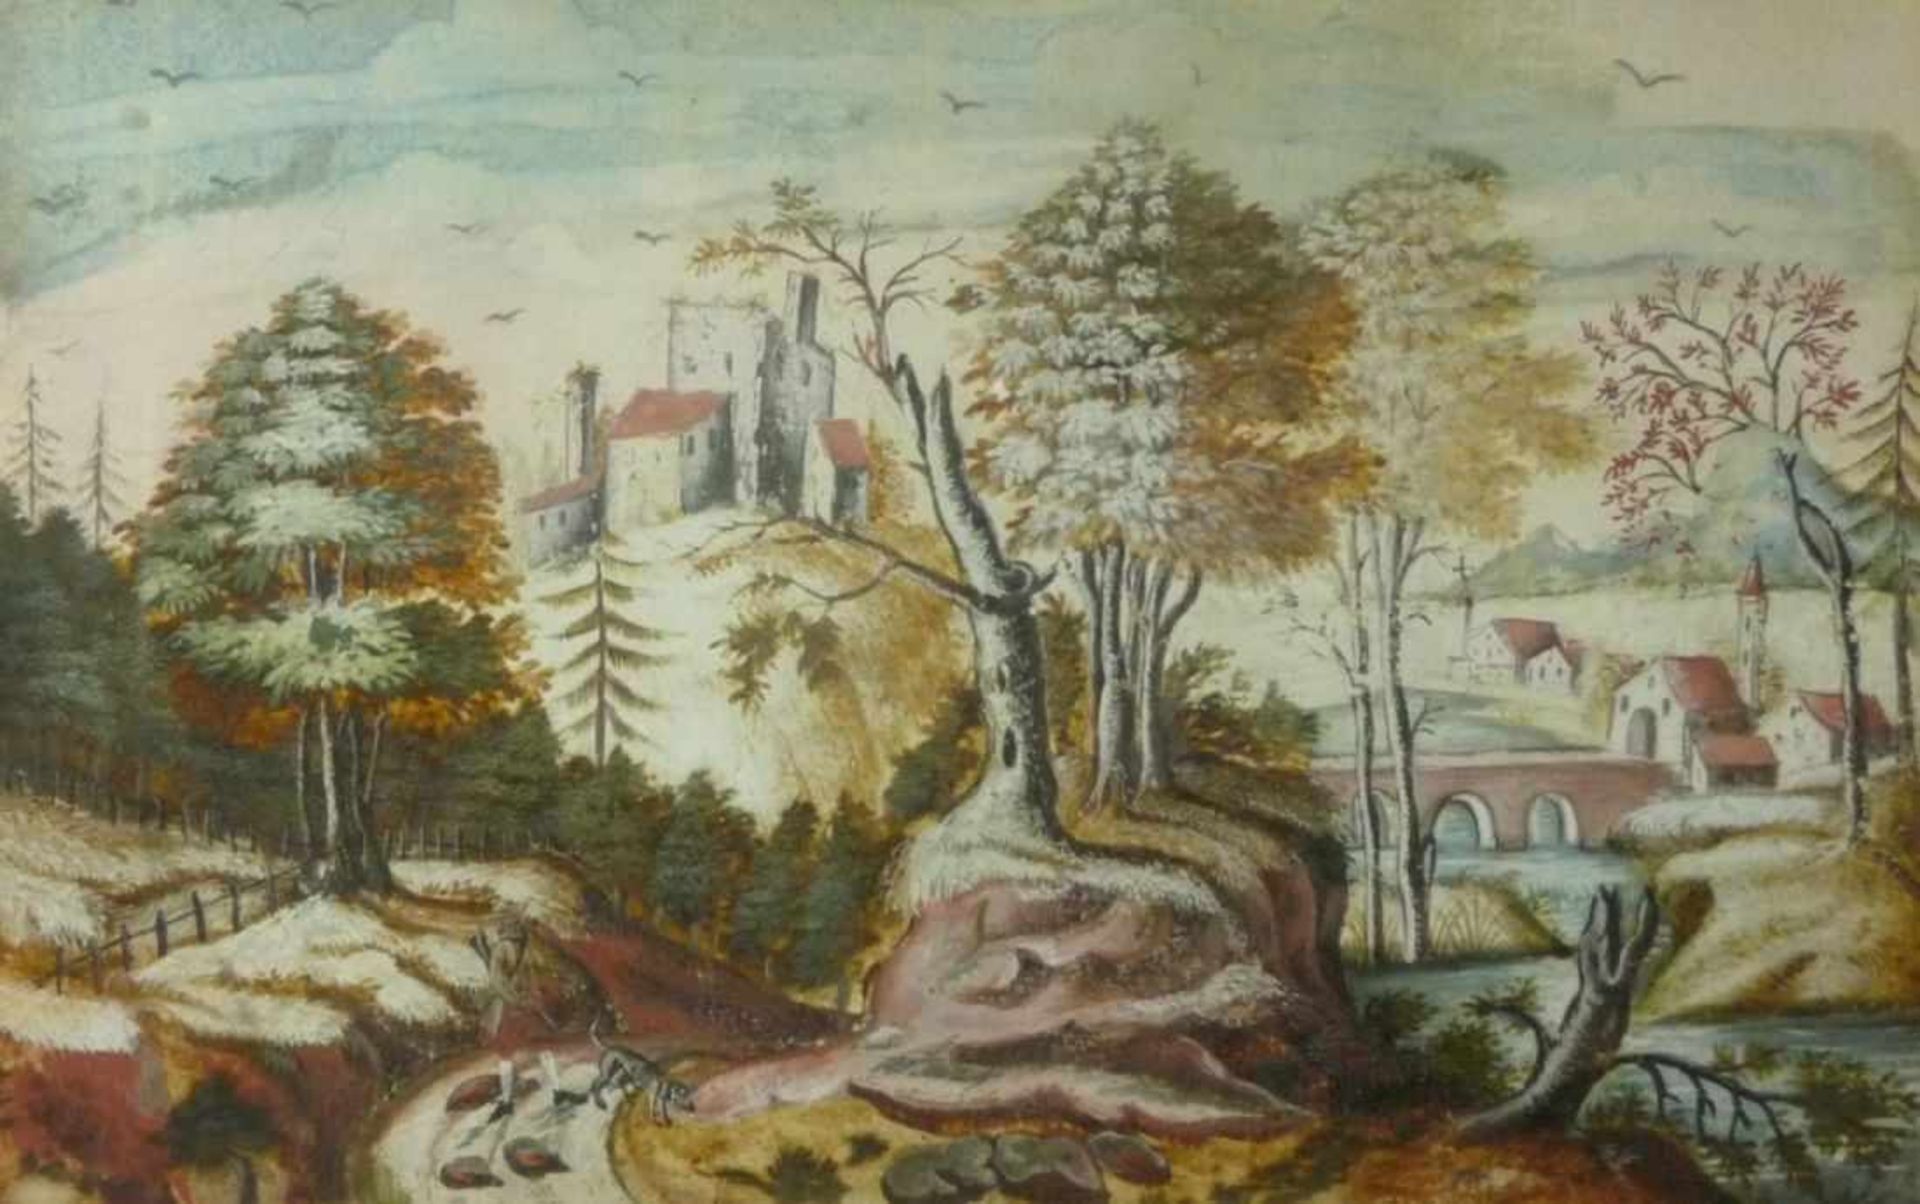 Flusslandschaft mit Architektur und Jäger18. Jh.Gouache, weiß gehöht. Ca. 14 x 22,5 cm; in